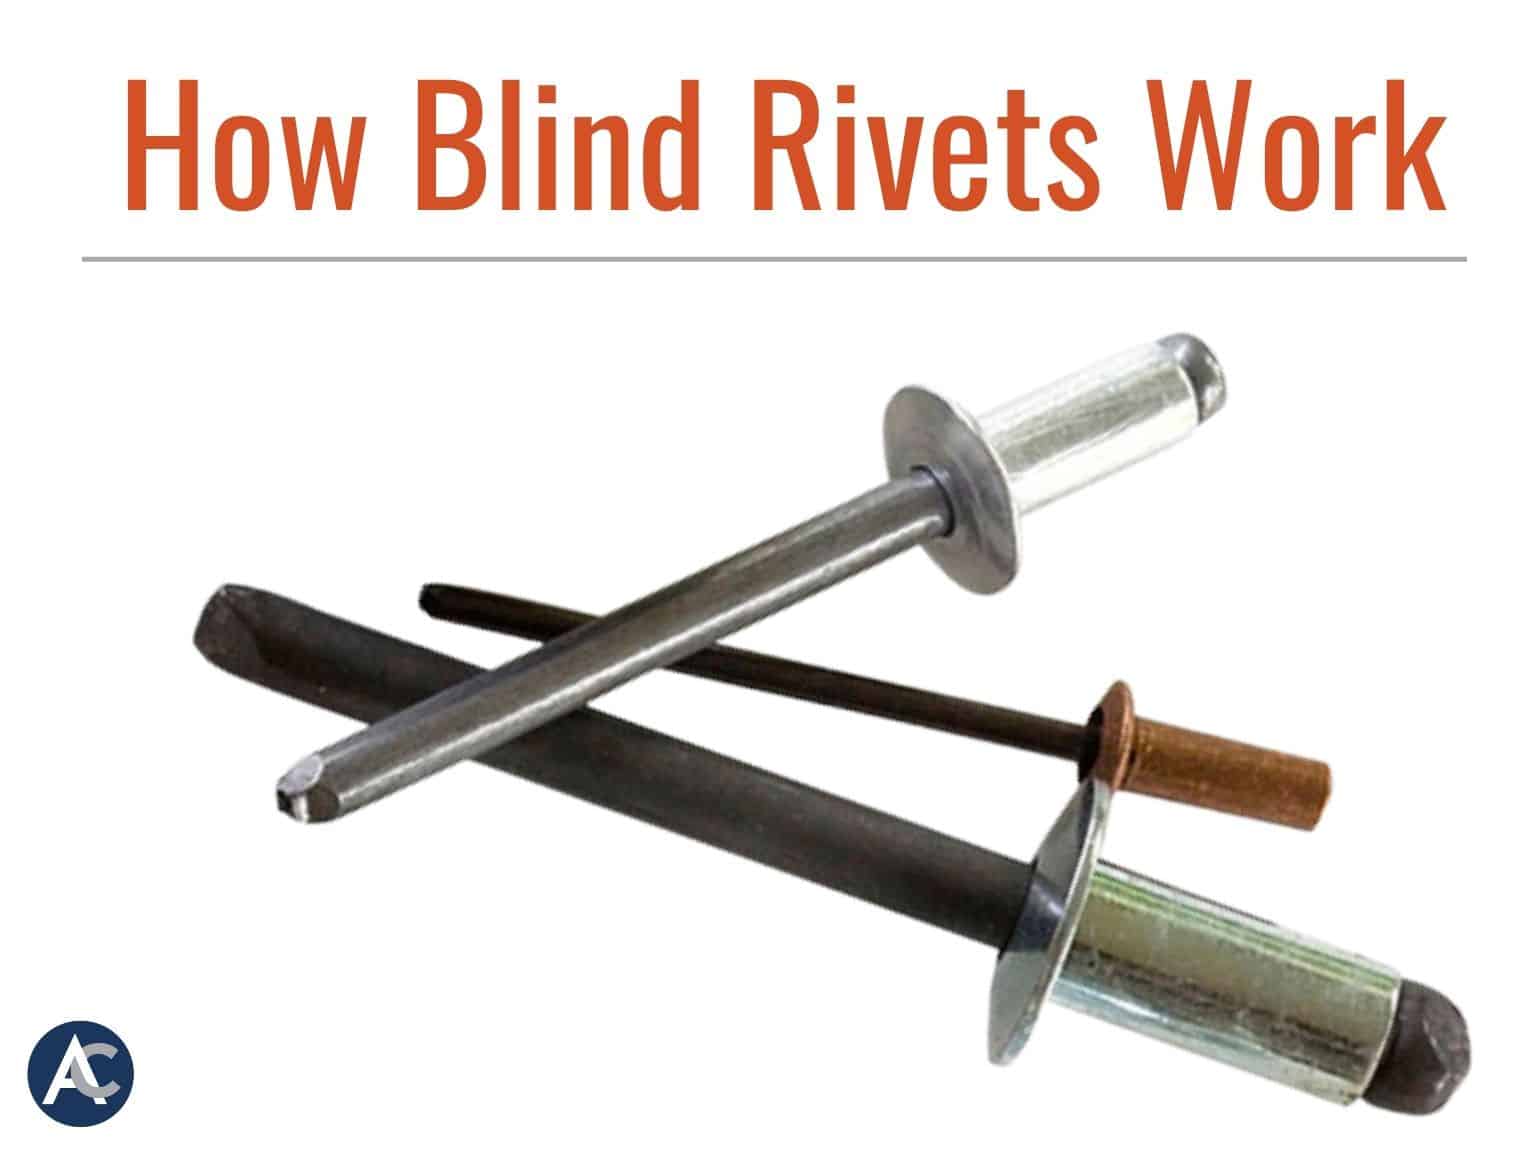 How Do Blind Rivets Work?